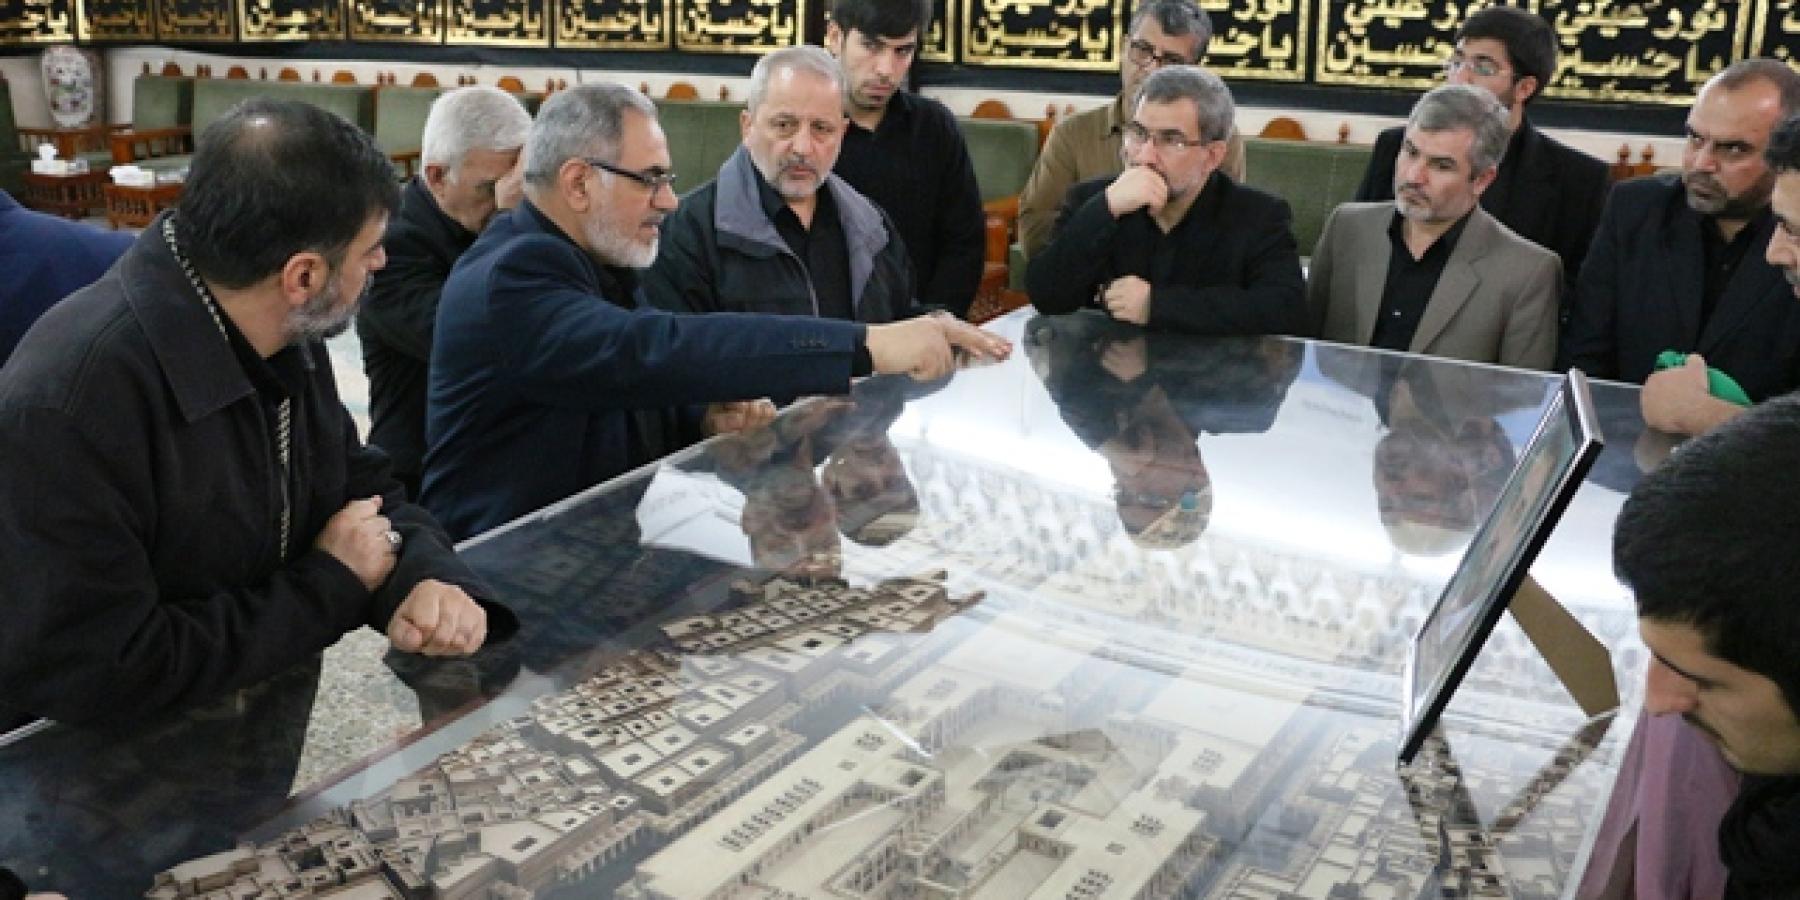 وفد ايراني يتشرف بزيارة الحرم الطاهر لأمير المؤمنين (عليه السلام)